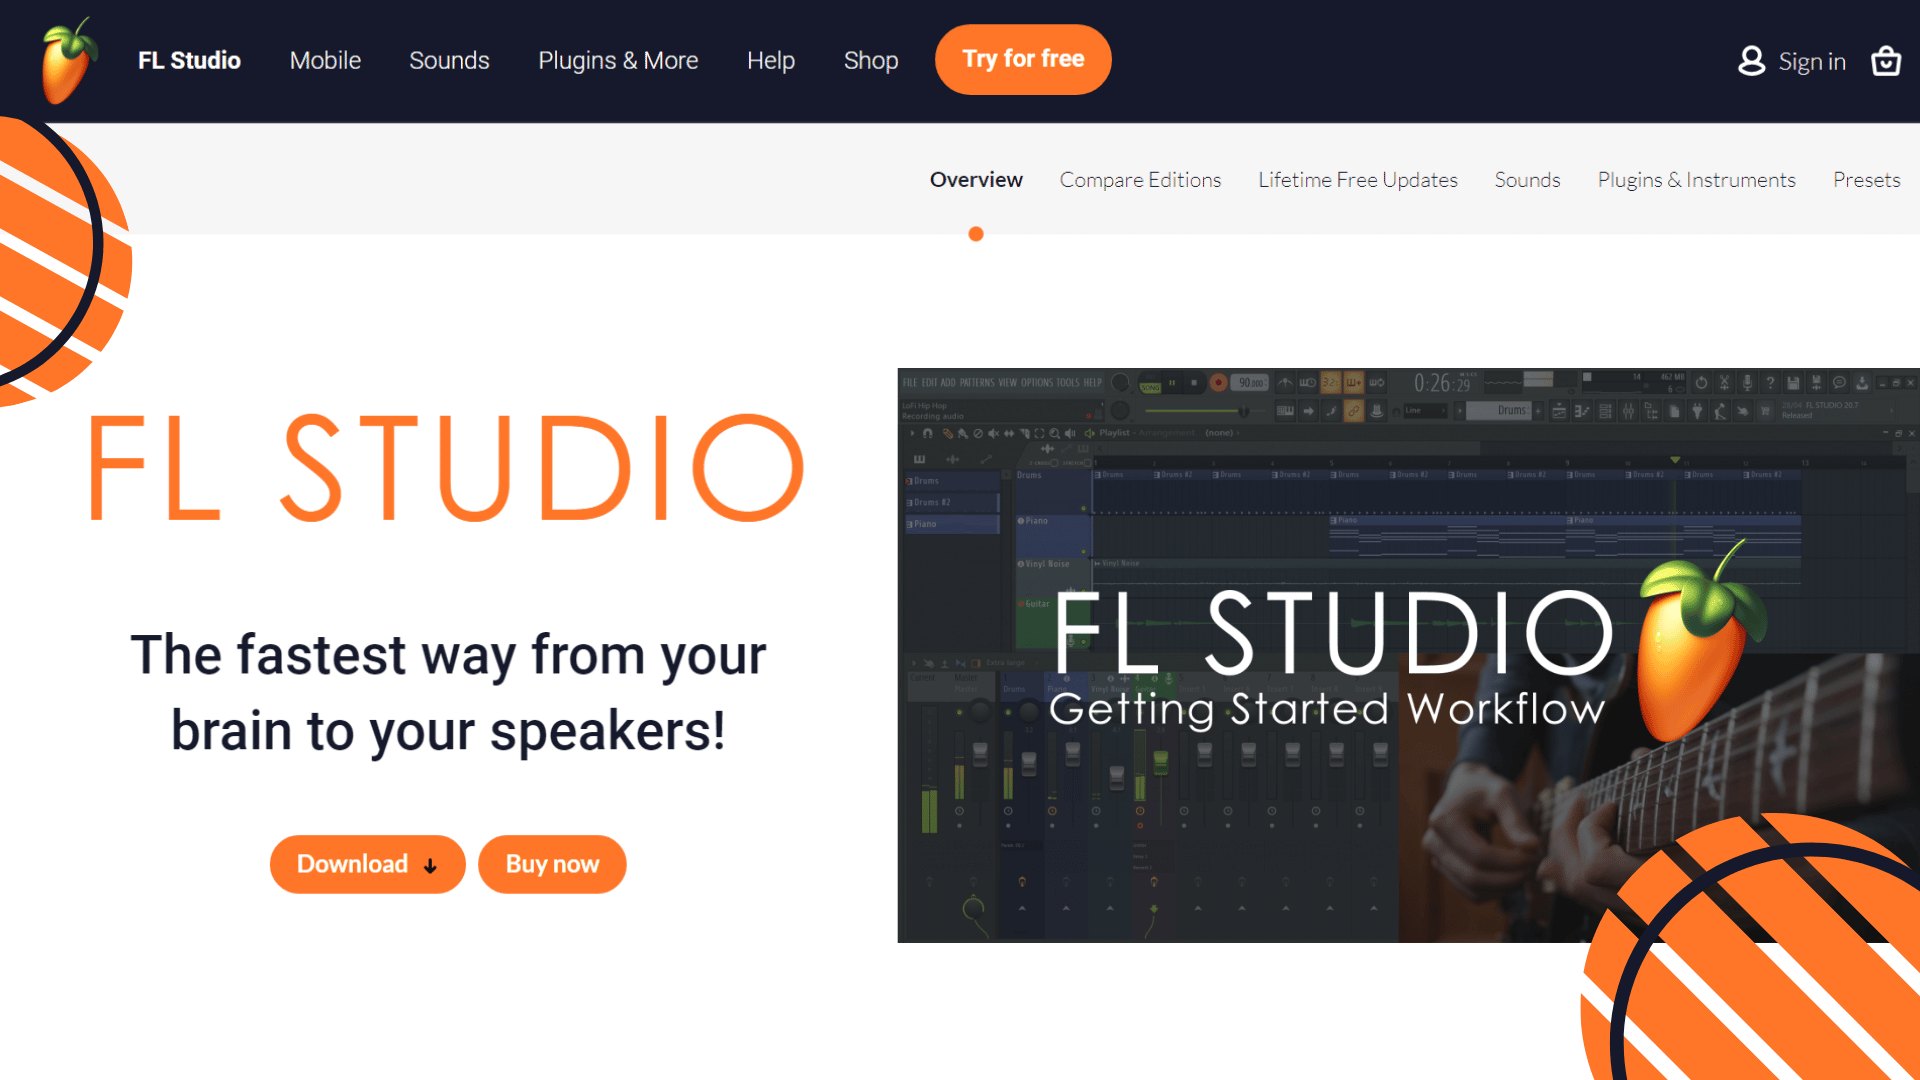 FL Studio 20 Features